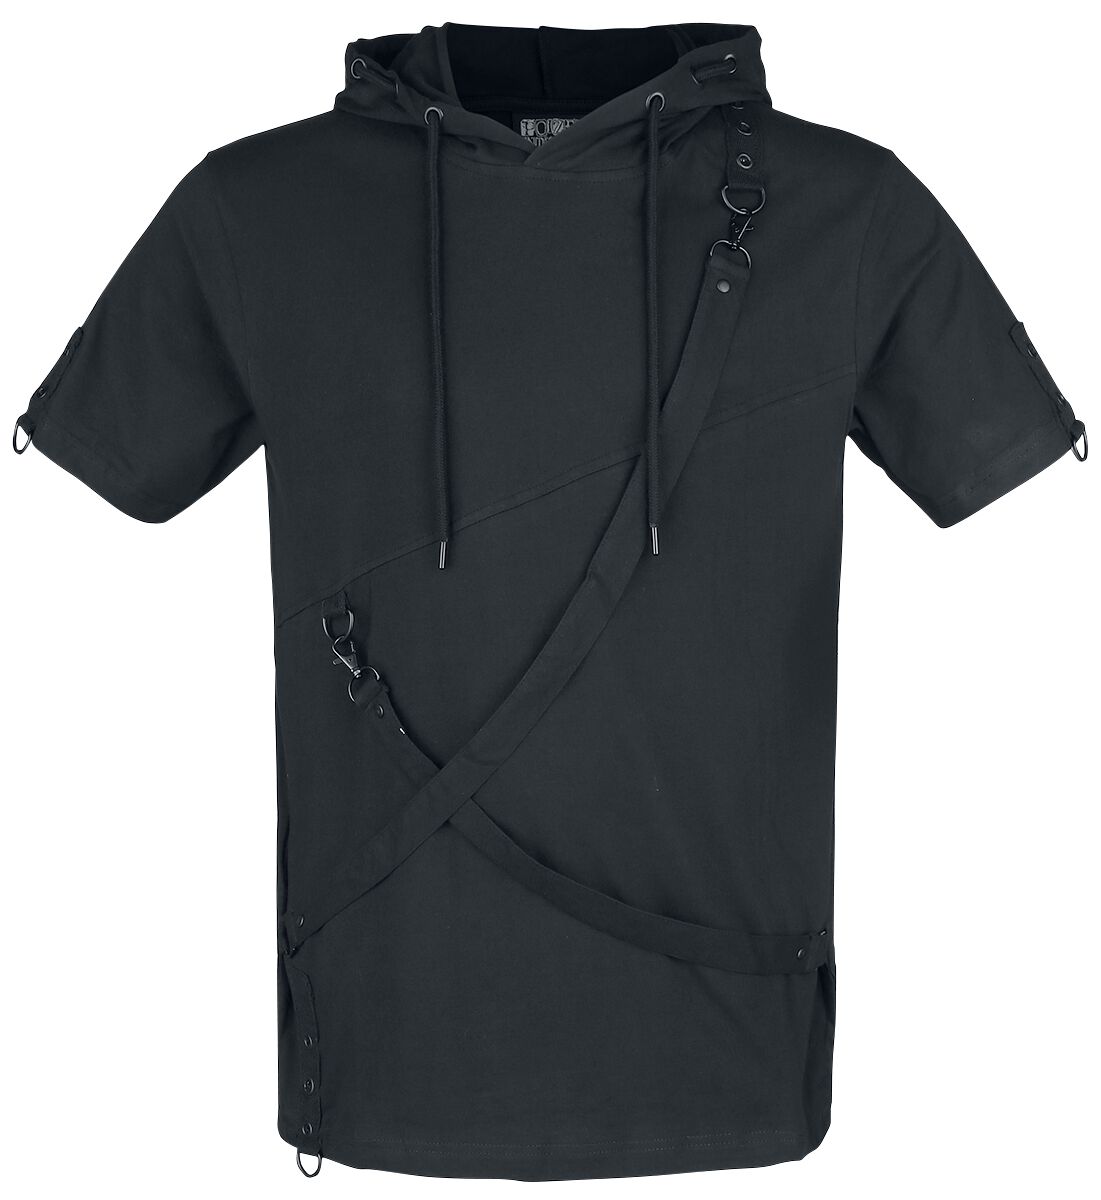 Poizen Industries - Gothic T-Shirt - Lucius Top - S bis XL - für Männer - Größe S - schwarz